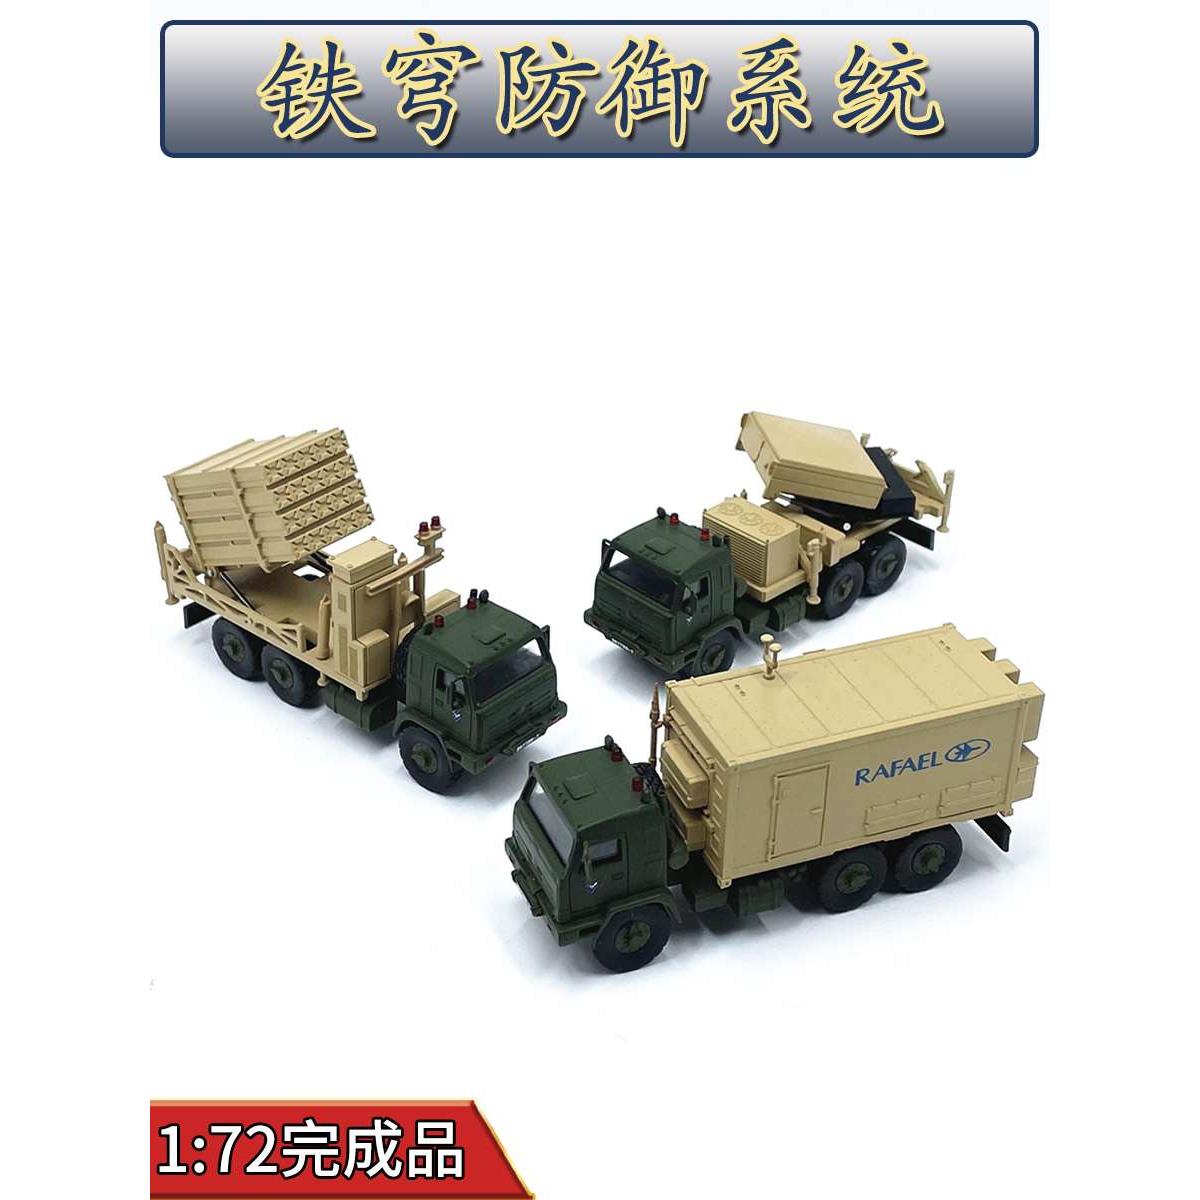 正品1:72以色列铁穹防御系统导弹运输车免胶分色合金成品模型仿真